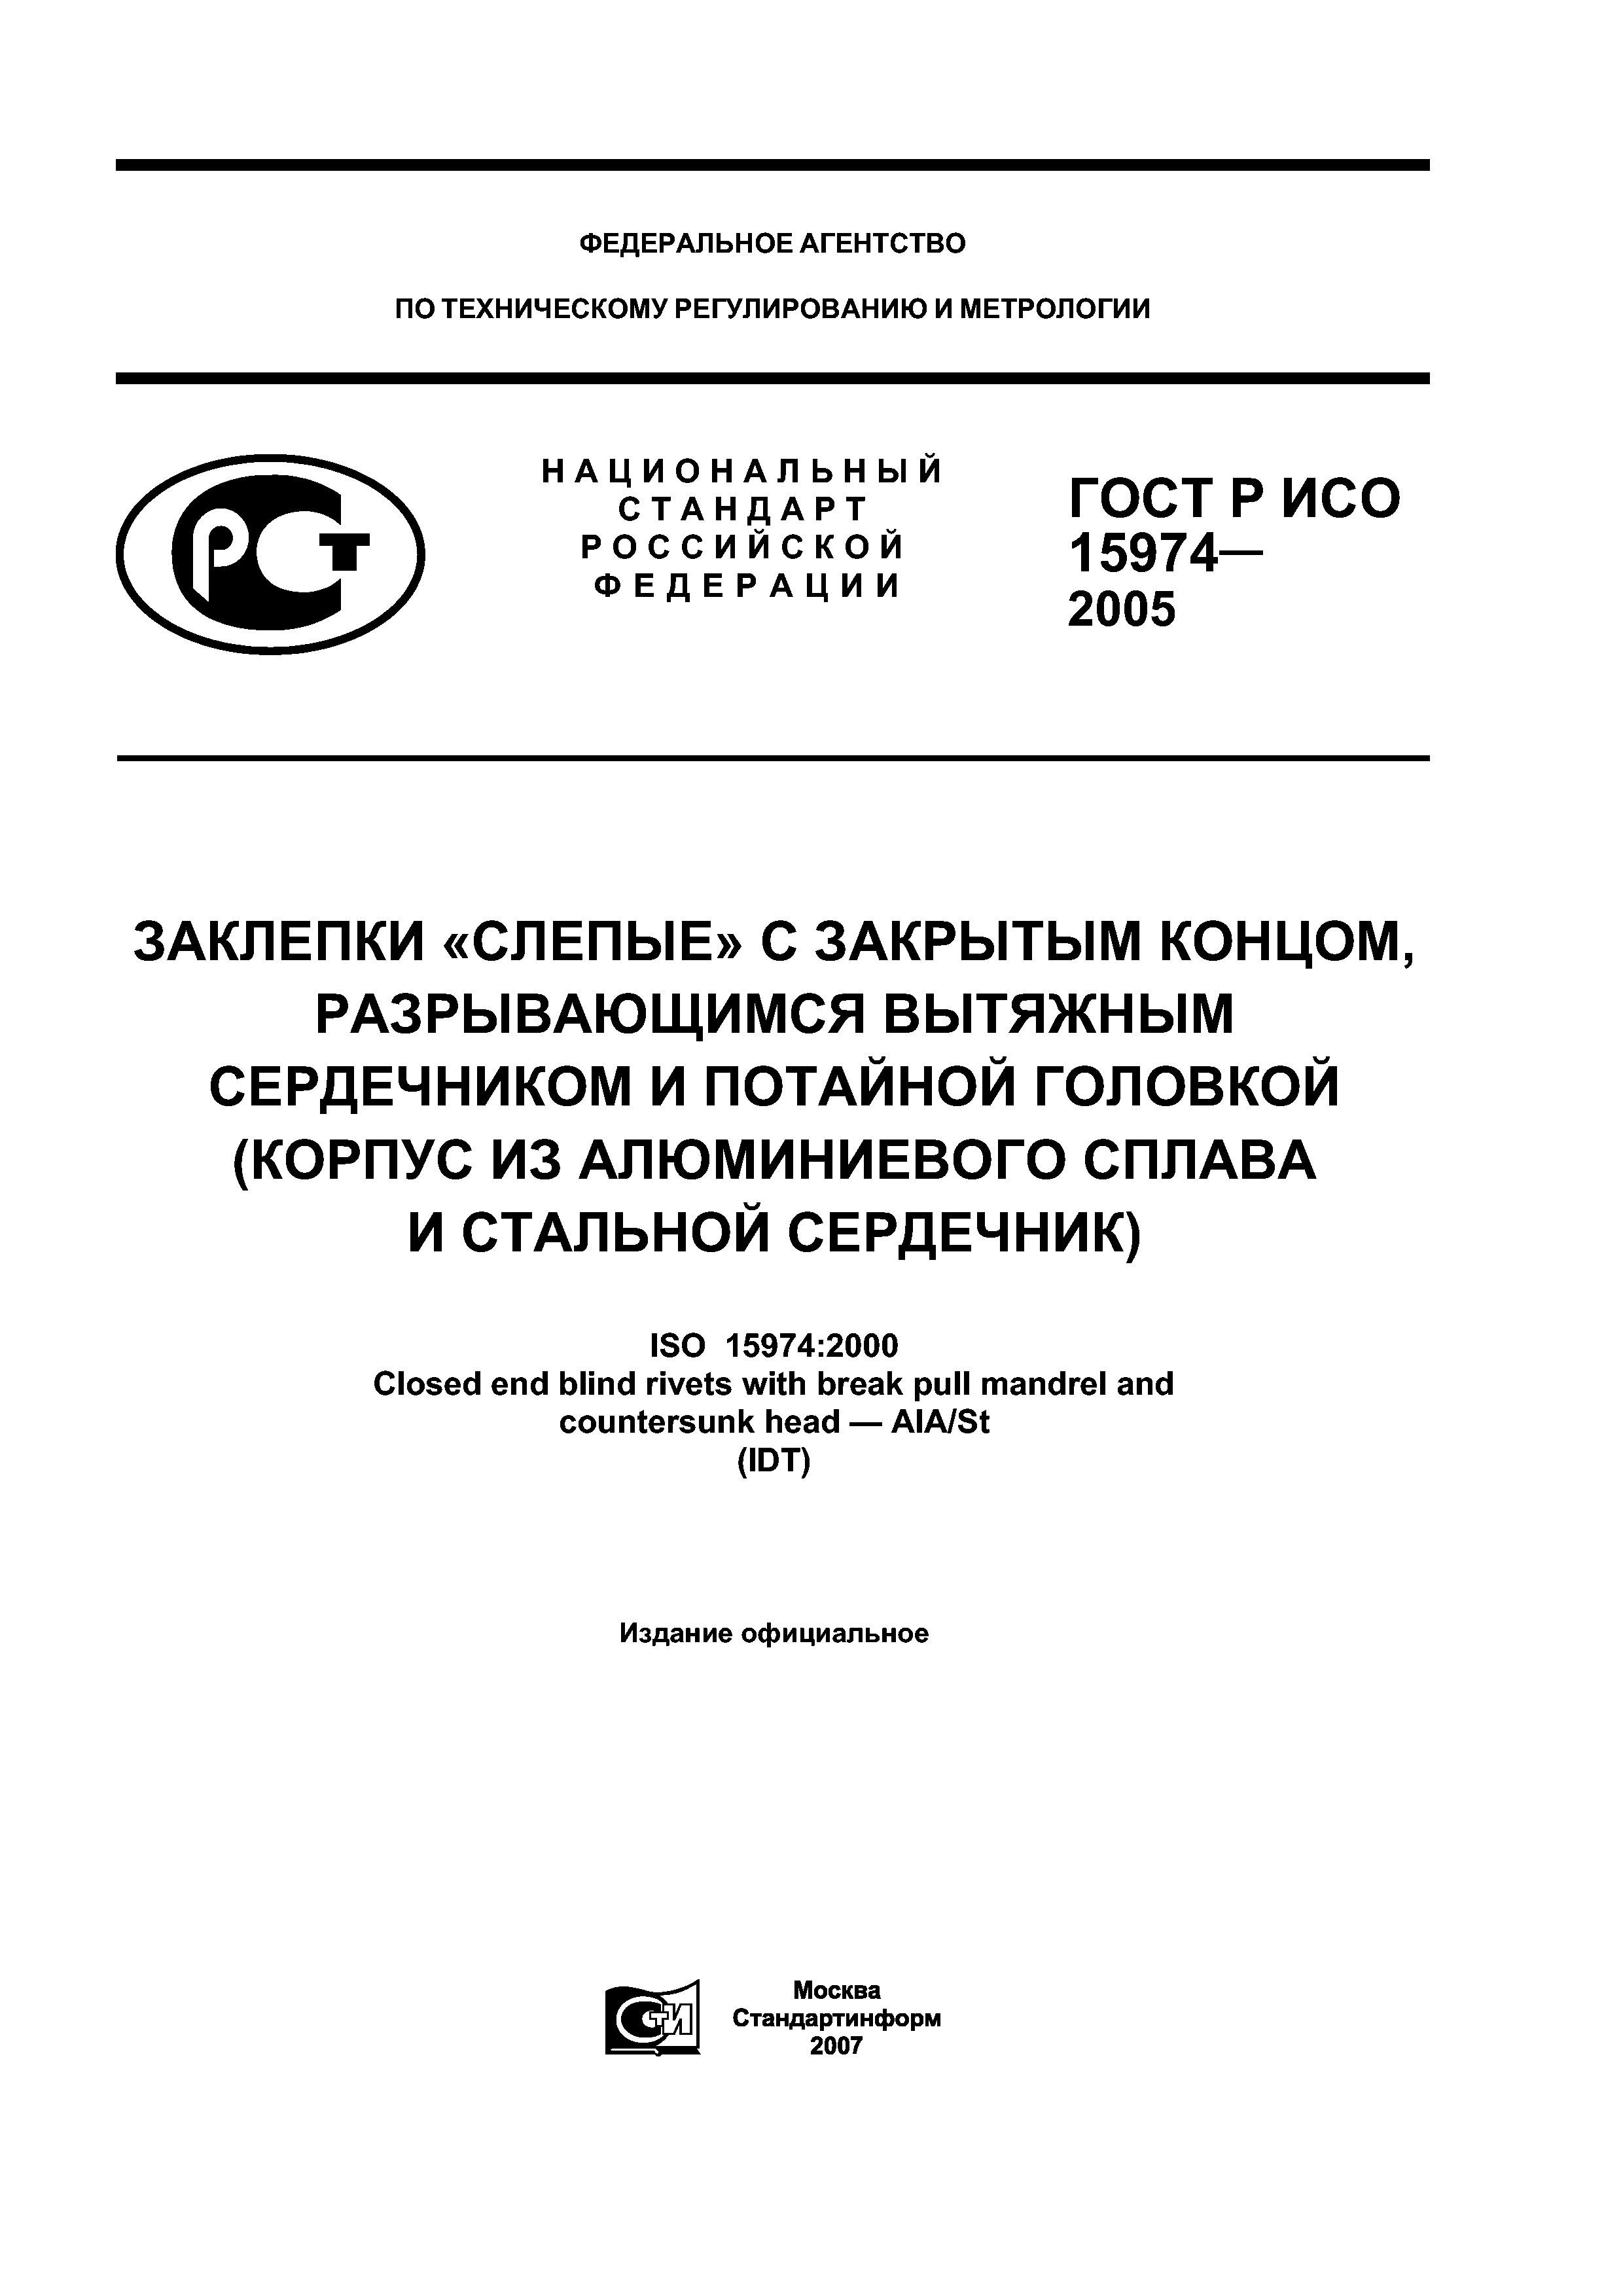 ГОСТ Р ИСО 15974-2005